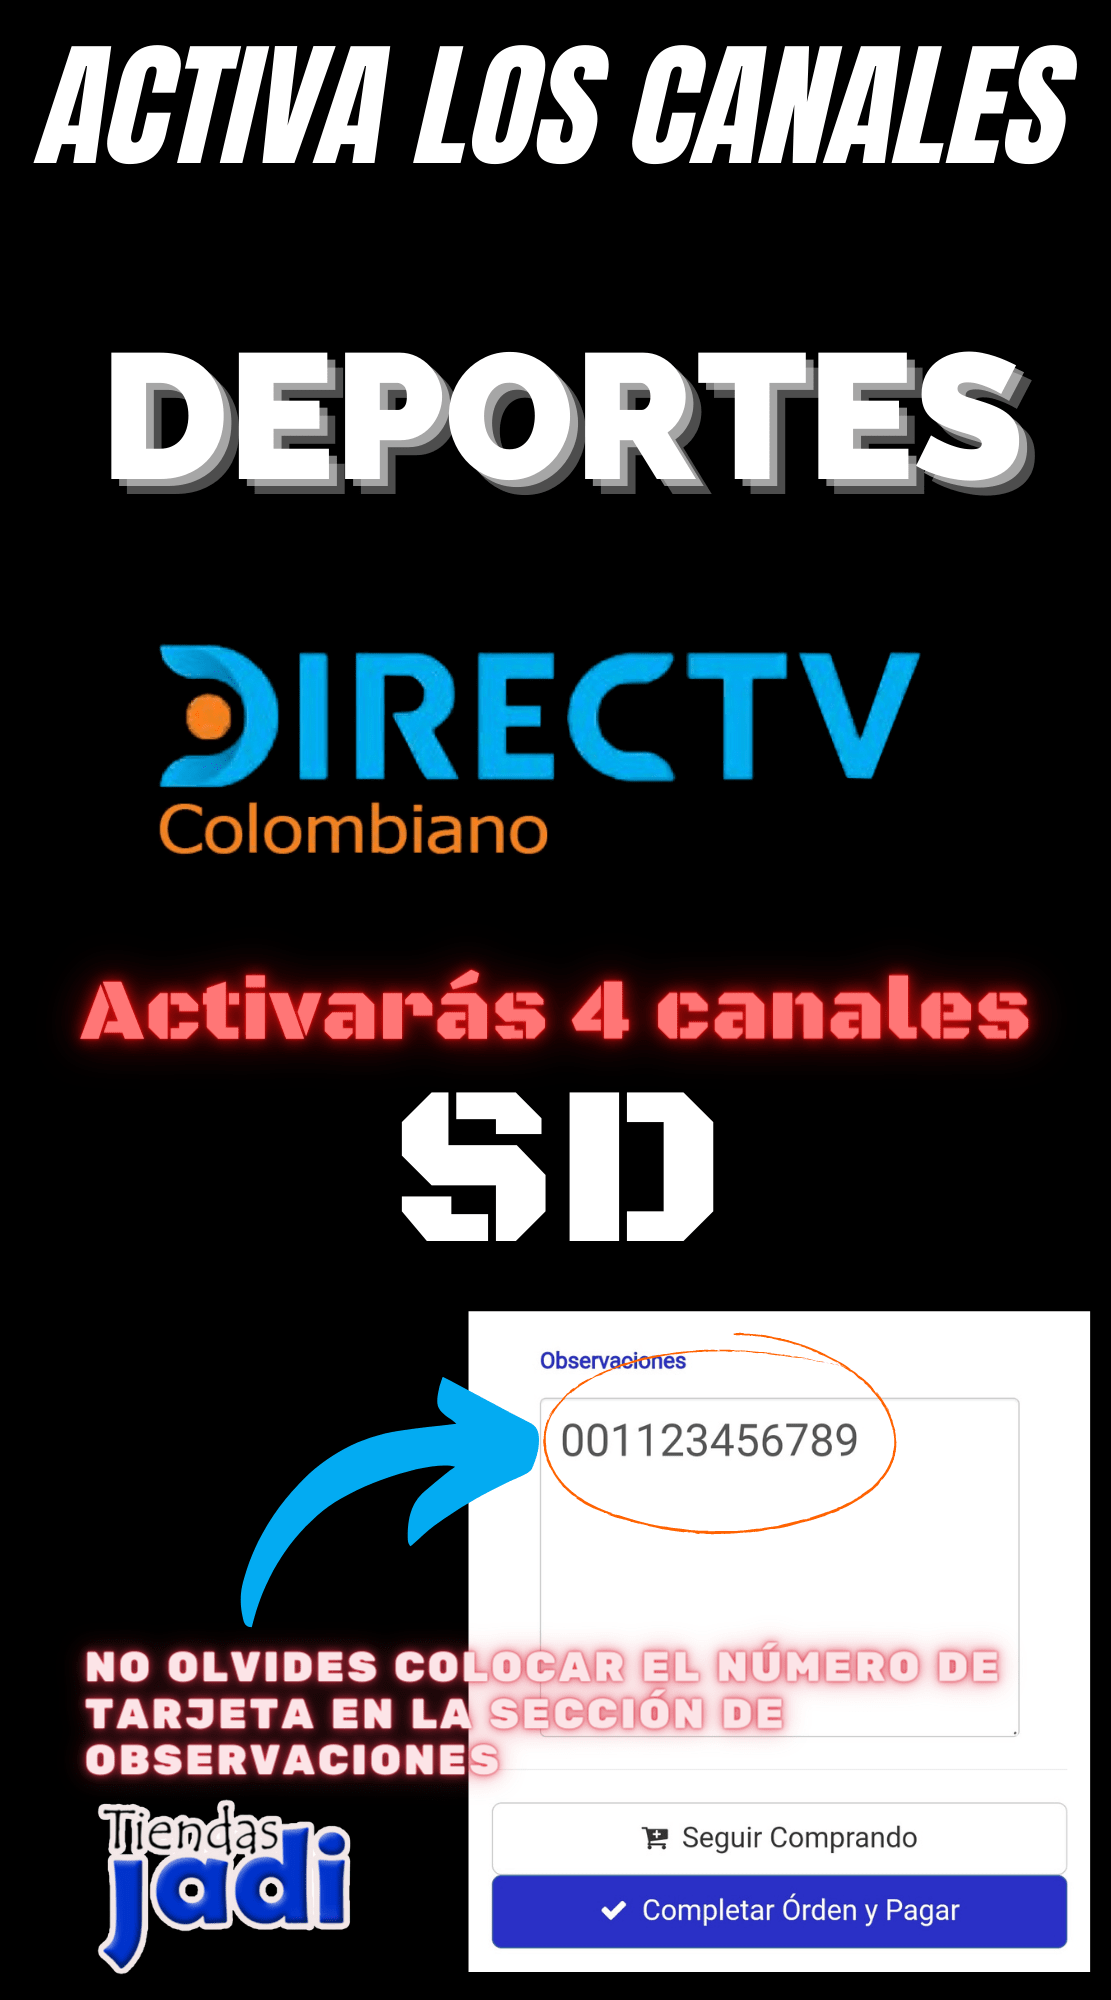 Activa Paquete DEPORTE de DIRECTV Colombiano y suma 4 Canales a tu Plan Actual